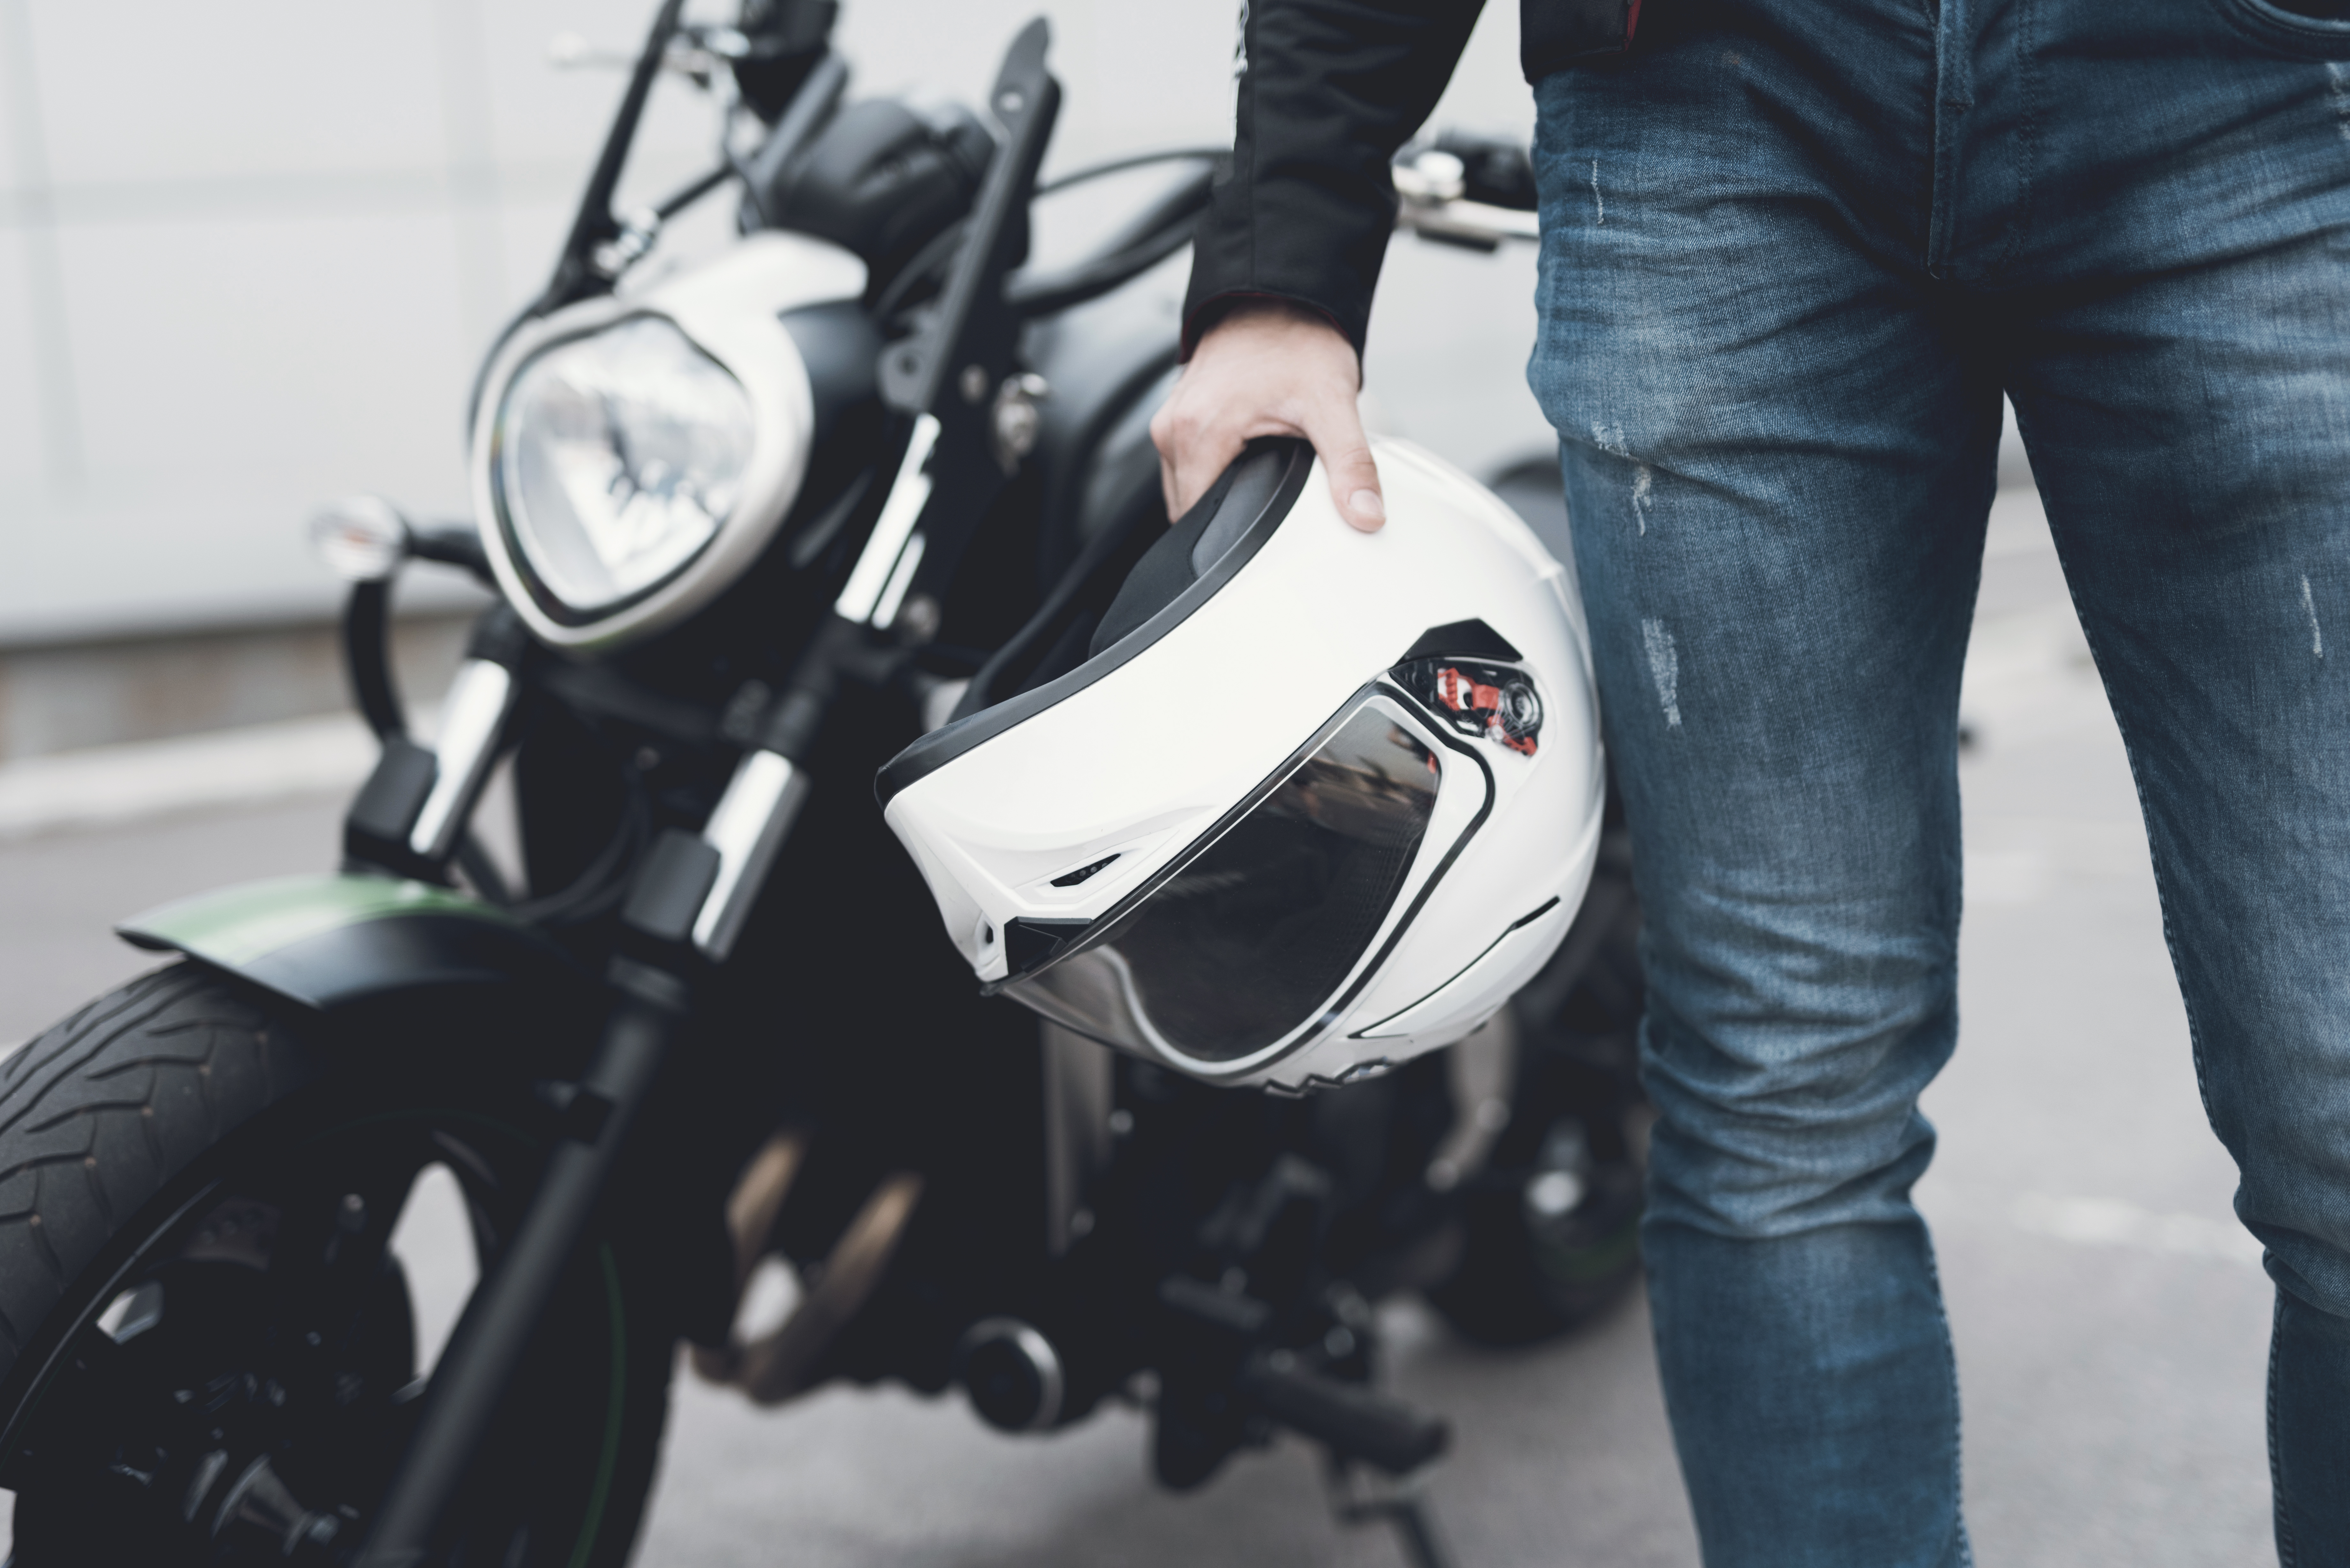 Quand changer son casque de moto ? - Dafy the Blog